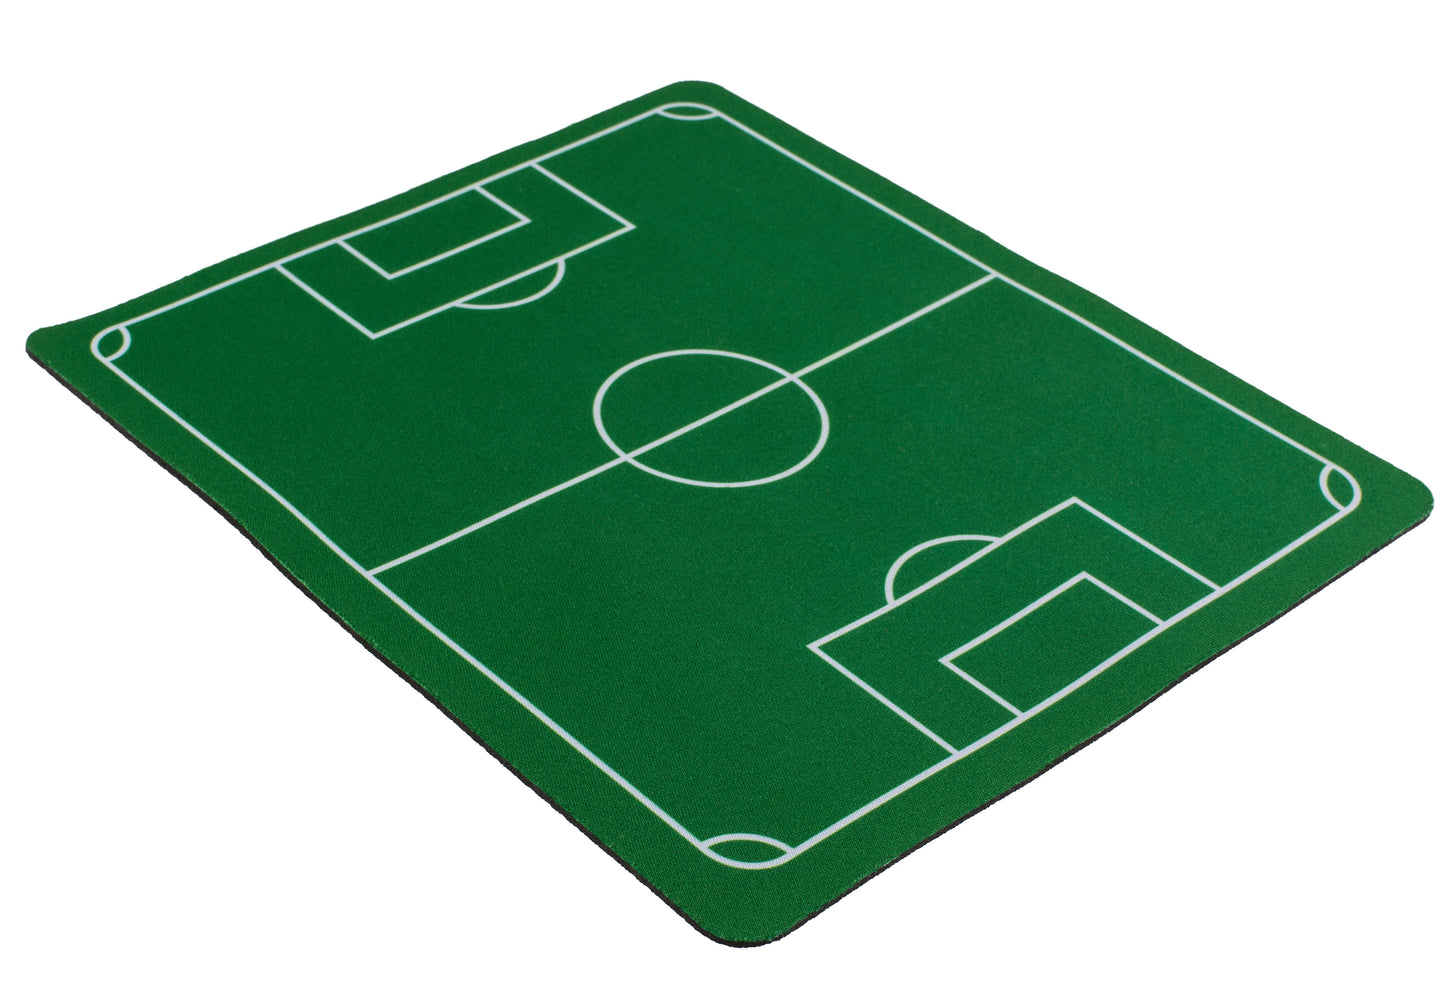 Mousepad - Soccer Field - Non Slip Rubber Back